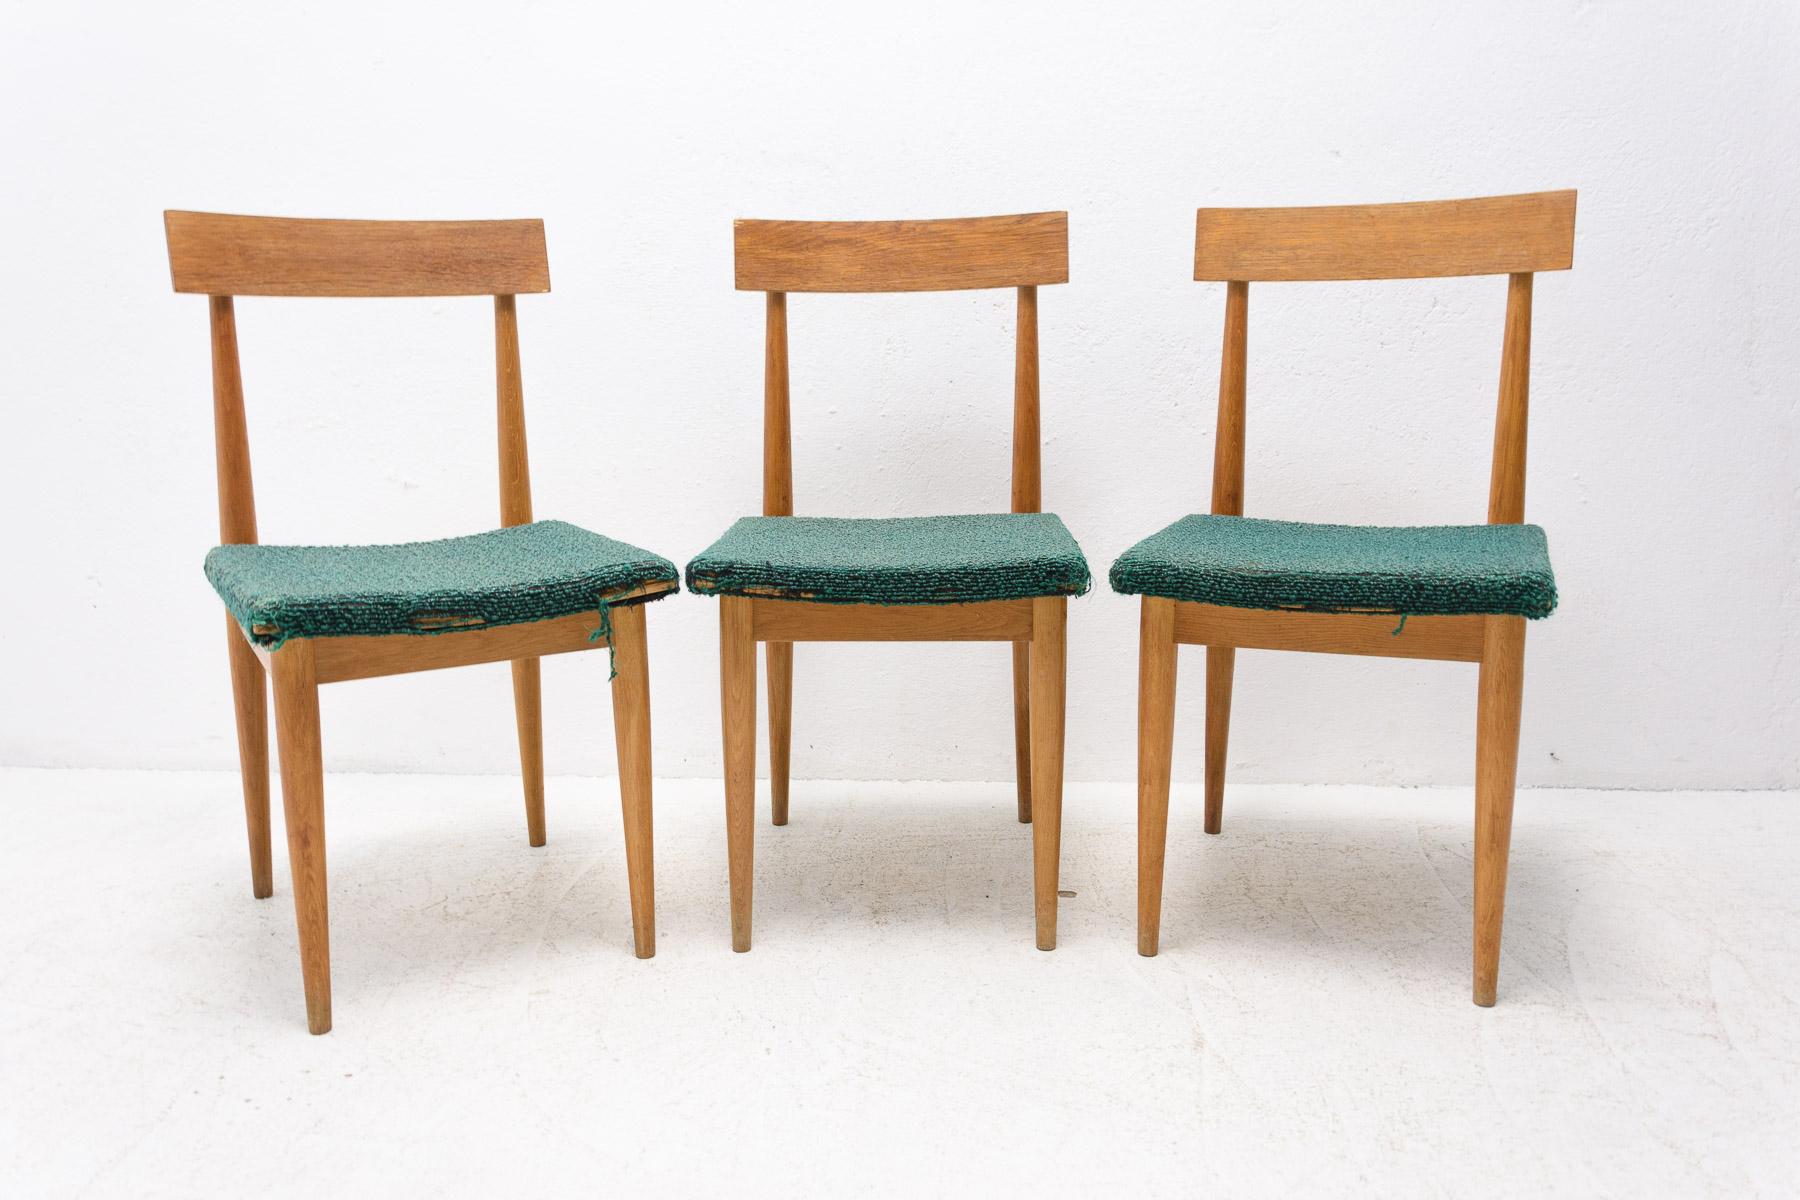 Diese gepolsterten Esszimmerstühle wurden in der ehemaligen Tschechoslowakei von der Firma JITONA in den 1970er Jahren hergestellt.
Sie sind in gutem Vintage-Zustand mit altersgemäßen Gebrauchsspuren. Buchenholz.
Sehr schönes Modell. Der Preis